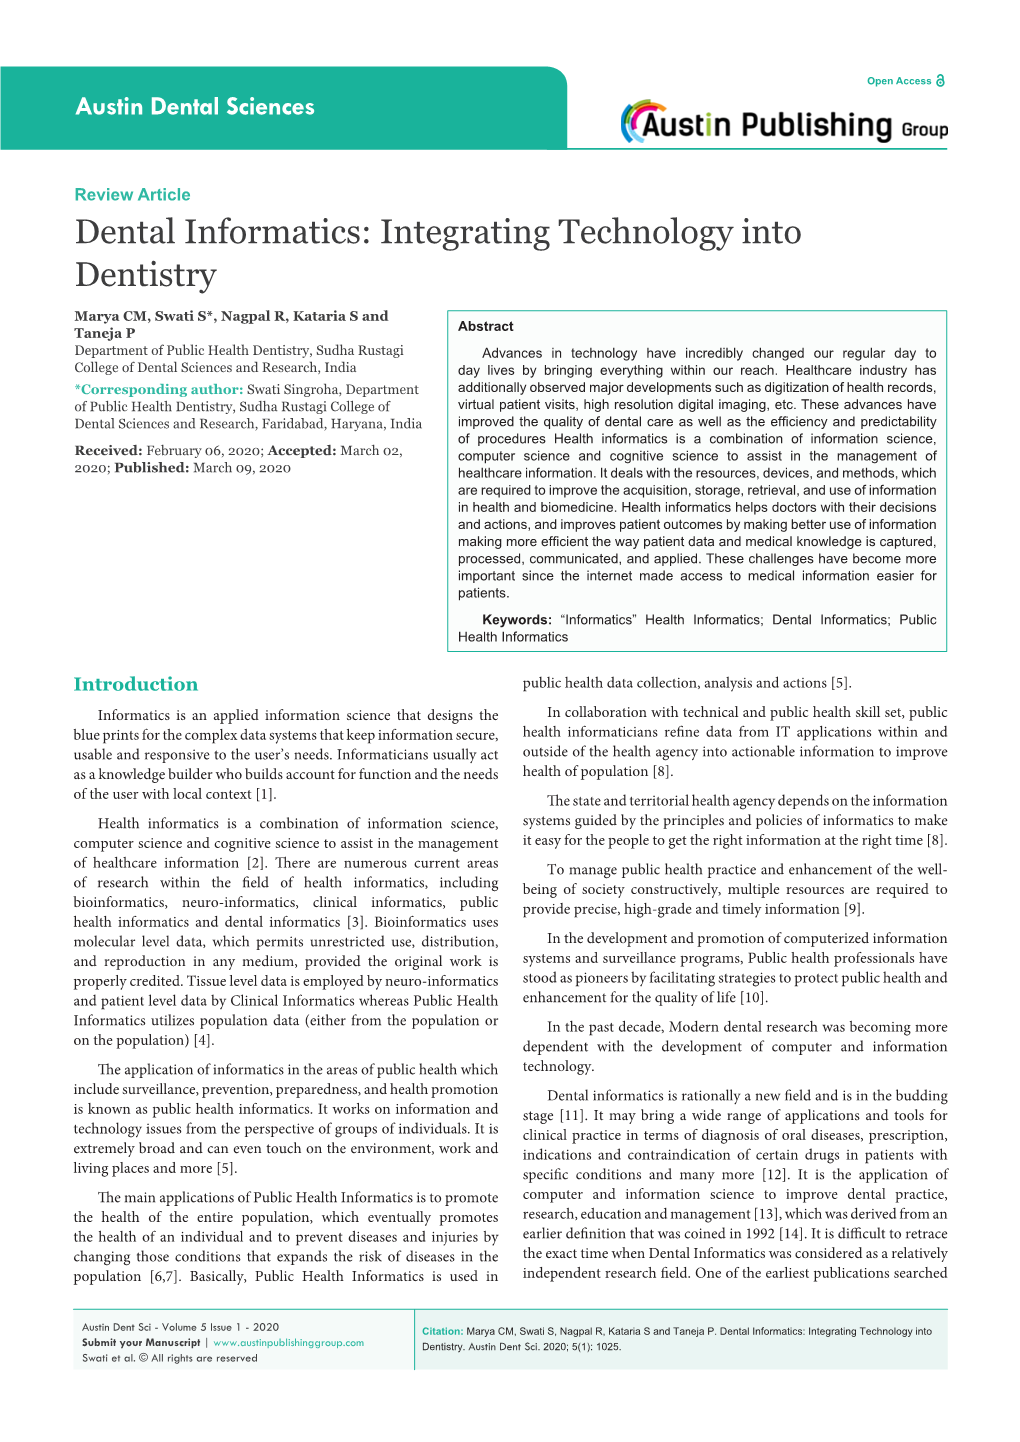 Dental Informatics: Integrating Technology Into Dentistry